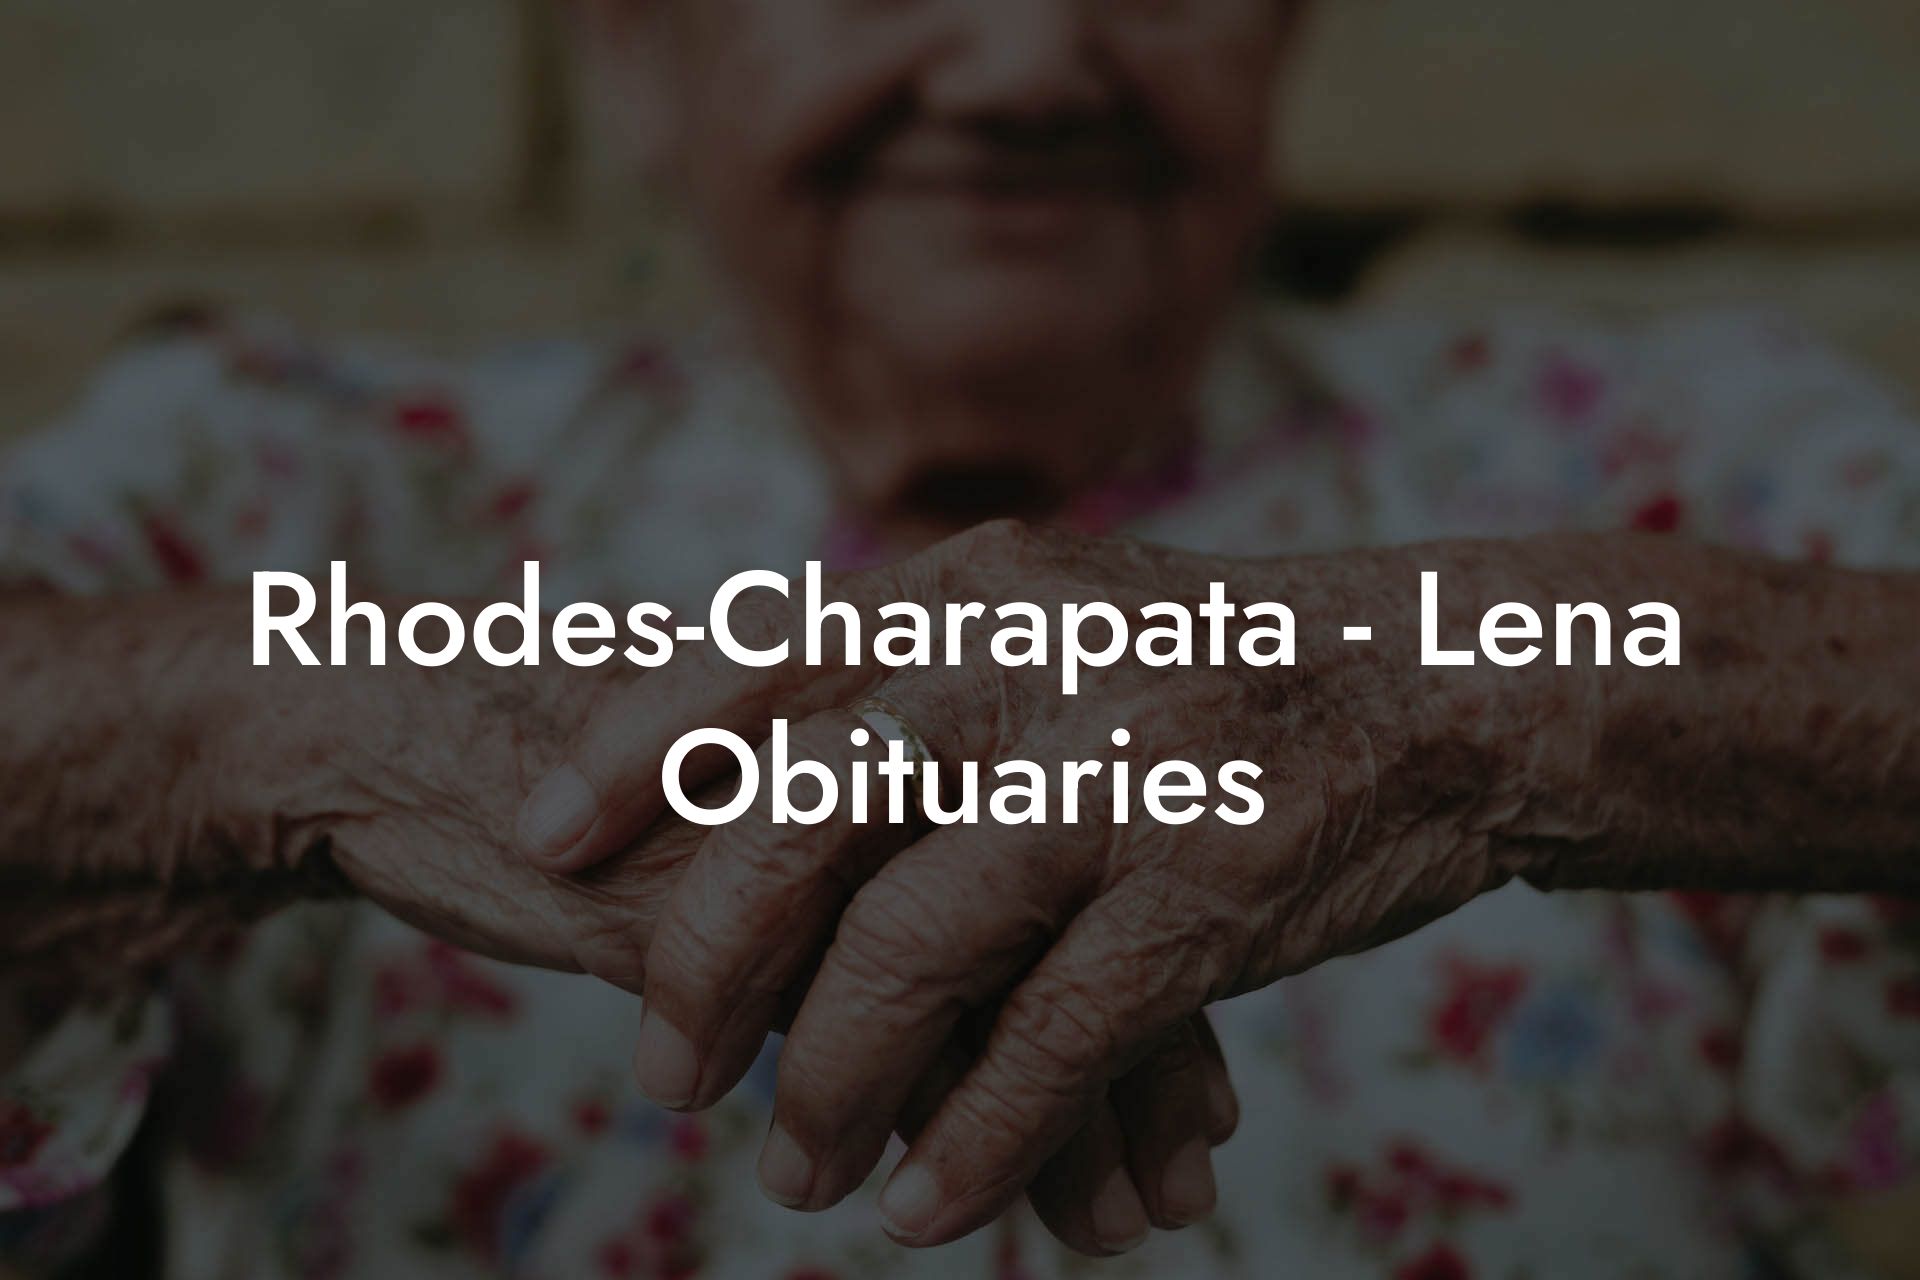 Rhodes-Charapata - Lena Obituaries